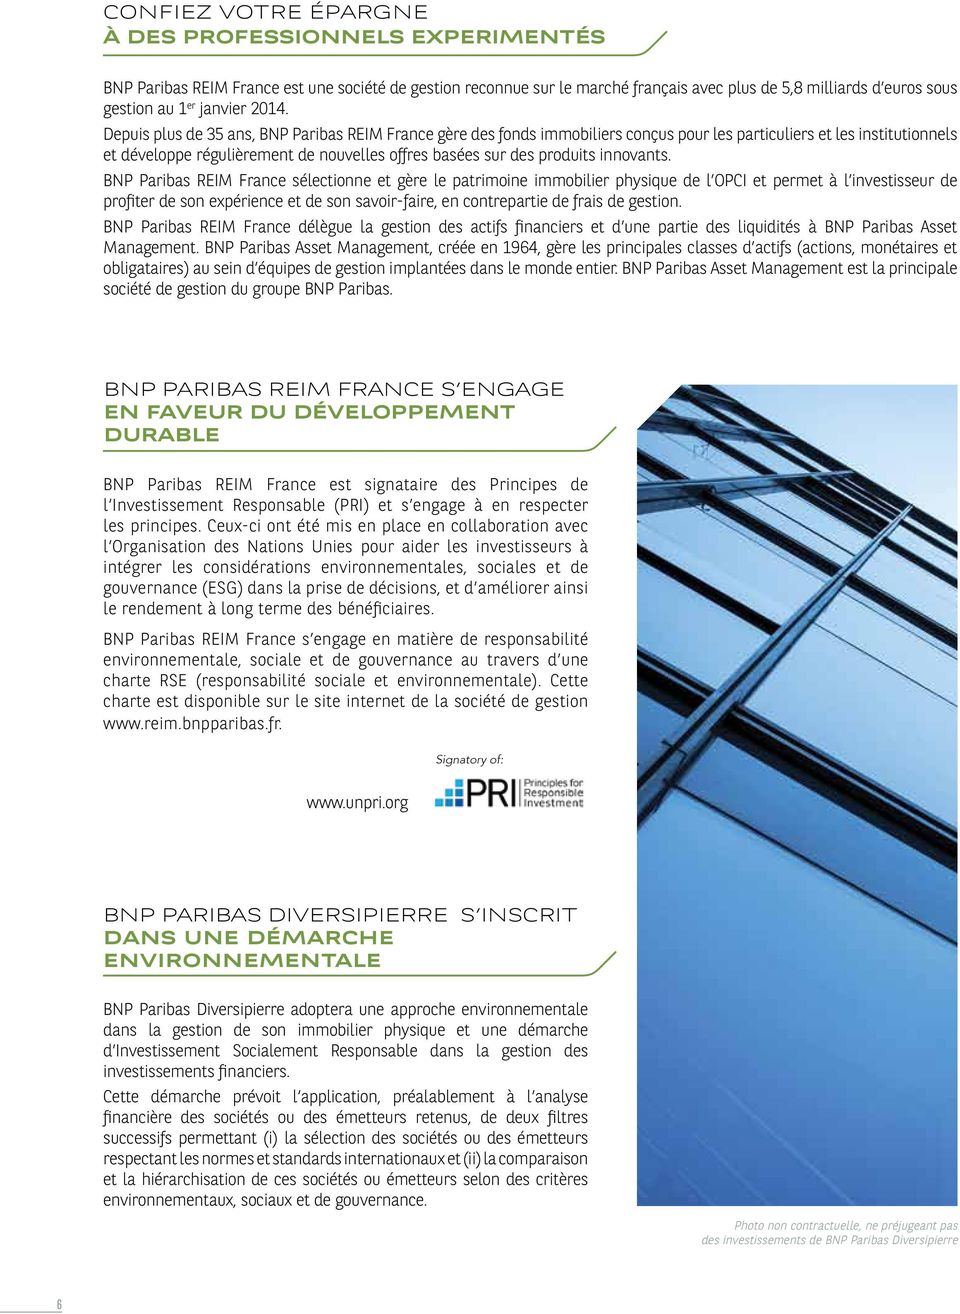 Depuis plus de 35 ans, BNP Paribas REIM France gère des fonds immobiliers conçus pour les particuliers et les institutionnels et développe régulièrement de nouvelles offres basées sur des produits